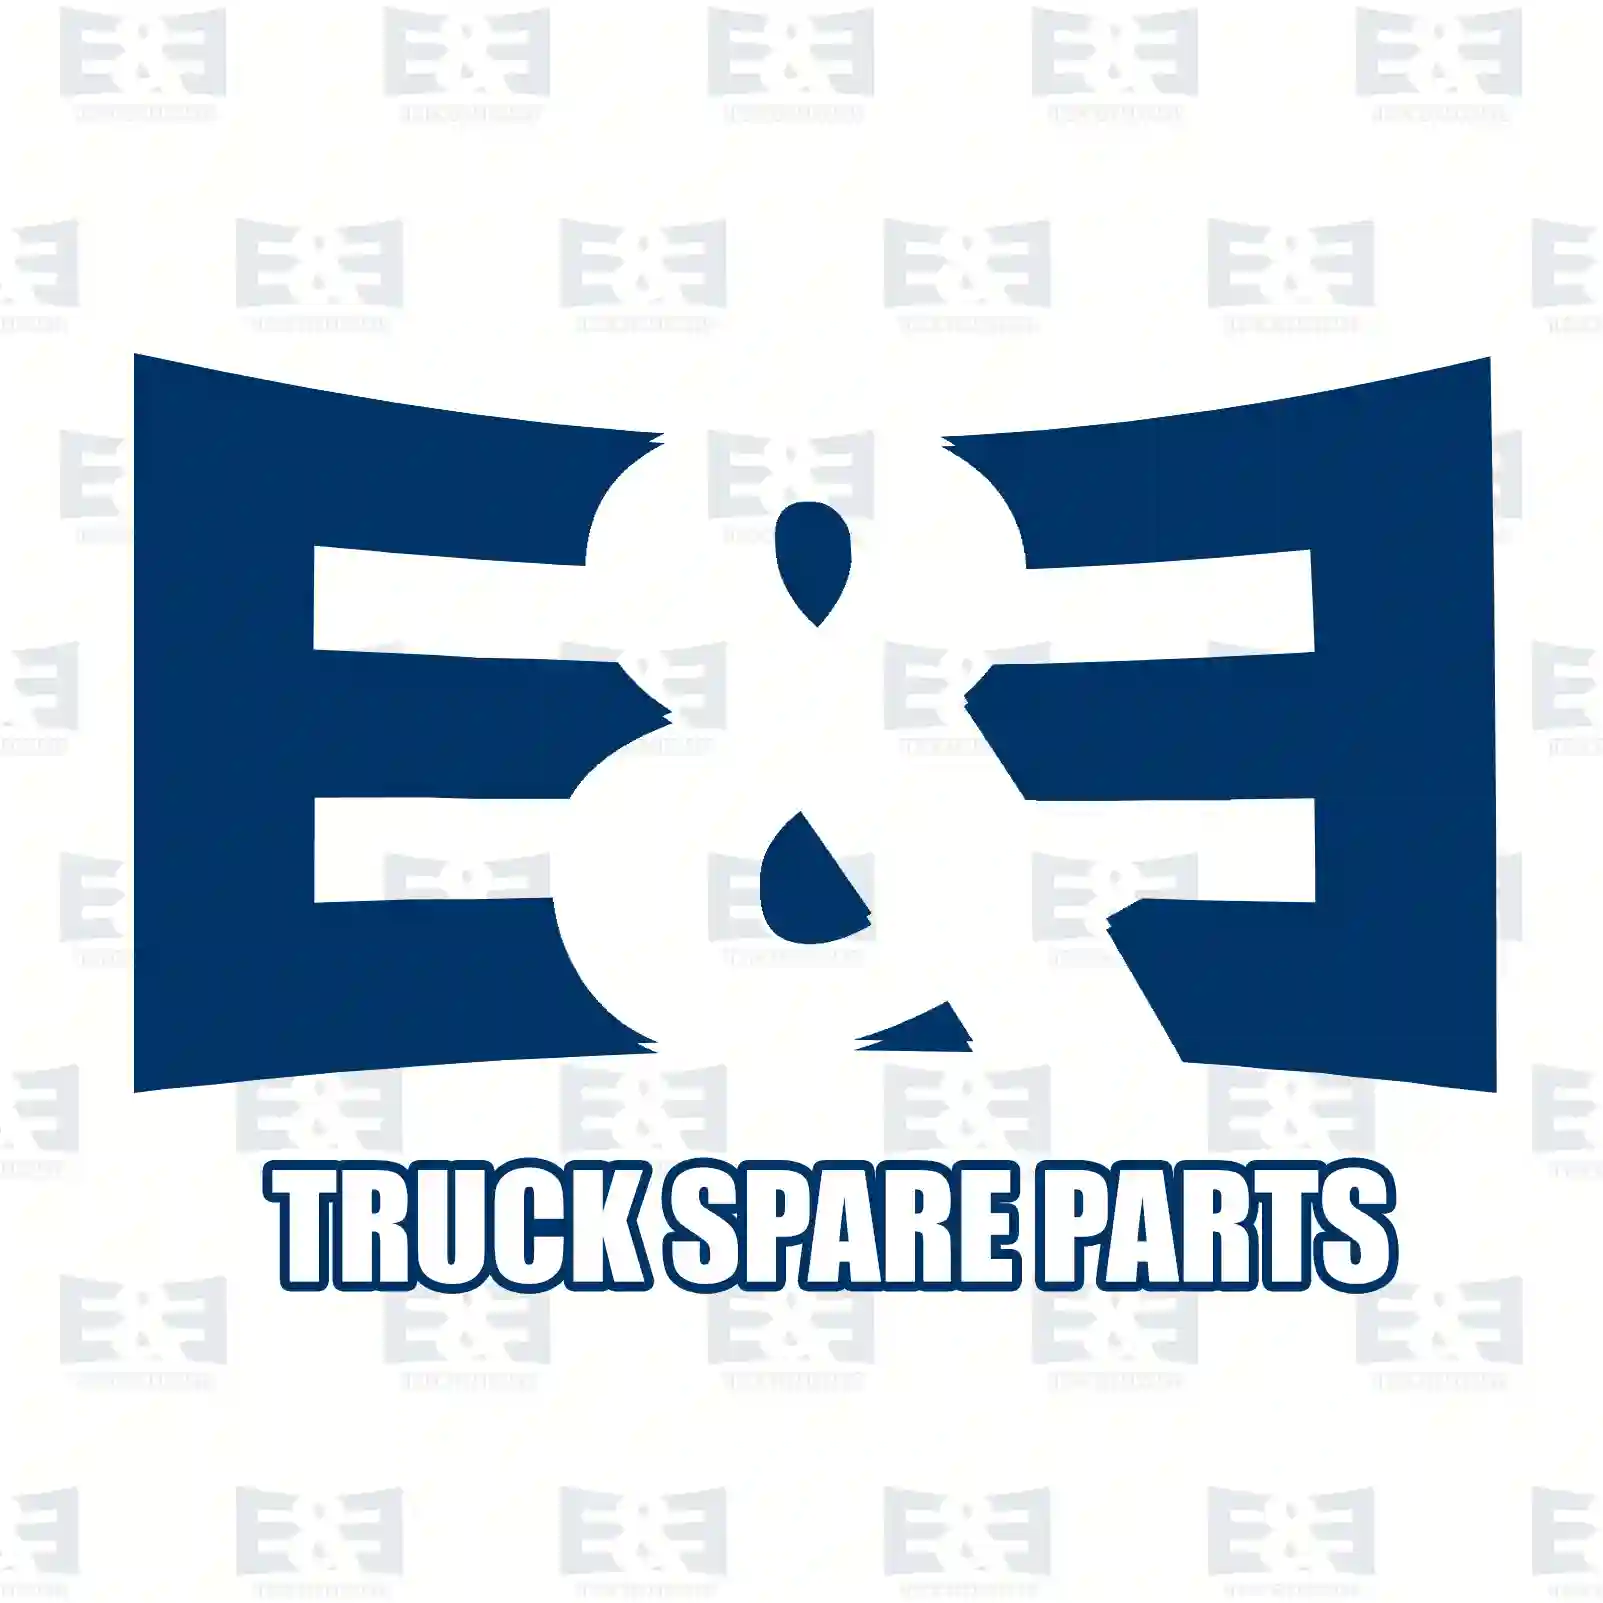 Field winding, 2E2299219, 0001515655, 5000822884, 280897, 6211873 ||  2E2299219 E&E Truck Spare Parts | Truck Spare Parts, Auotomotive Spare Parts Field winding, 2E2299219, 0001515655, 5000822884, 280897, 6211873 ||  2E2299219 E&E Truck Spare Parts | Truck Spare Parts, Auotomotive Spare Parts